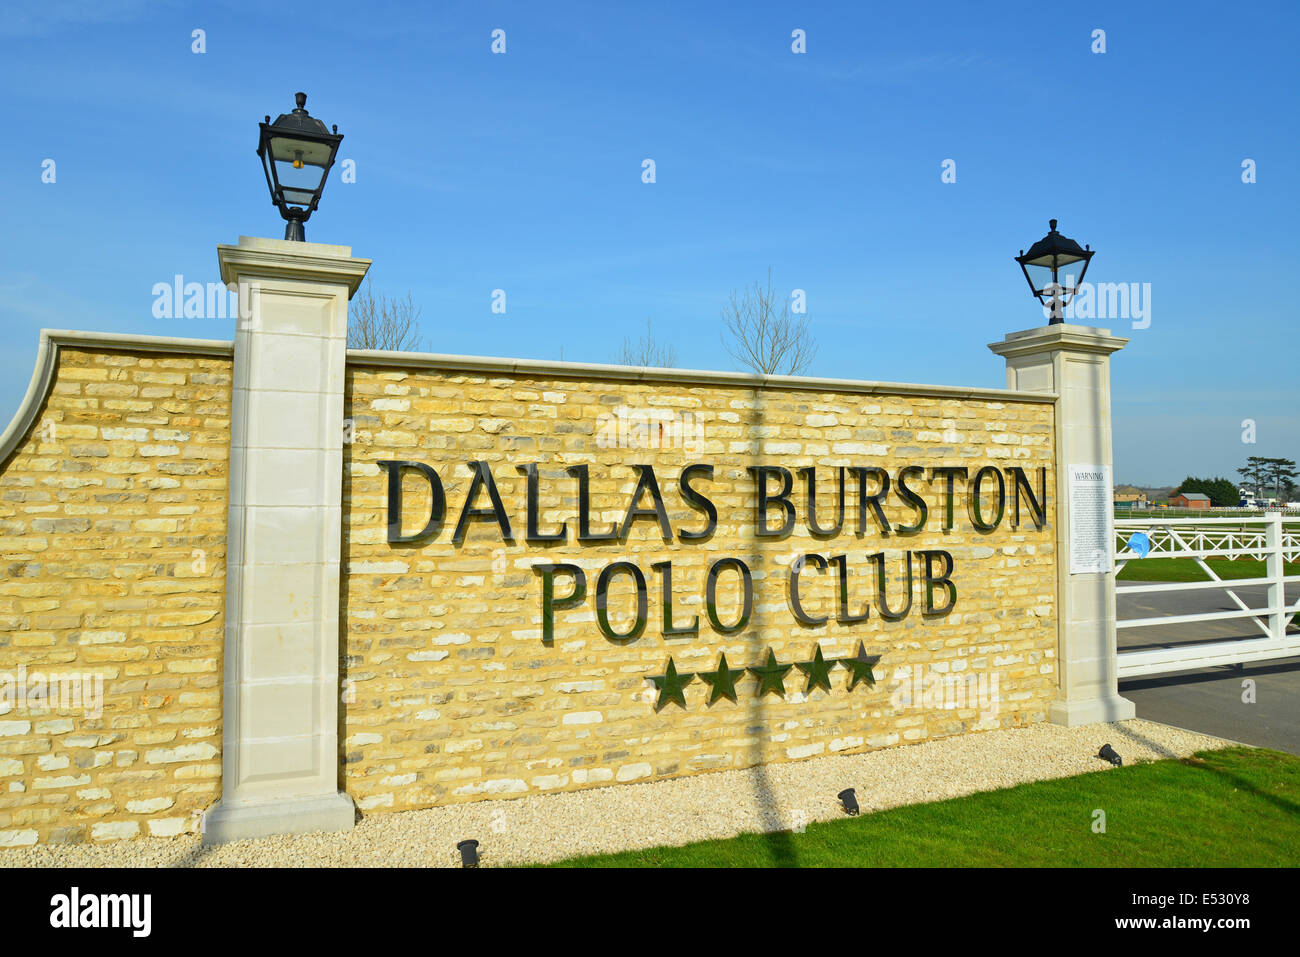 Panneau d'entrée à Dallas Burton Polo Club, Southam, Warwickshire, Angleterre, Royaume-Uni Banque D'Images